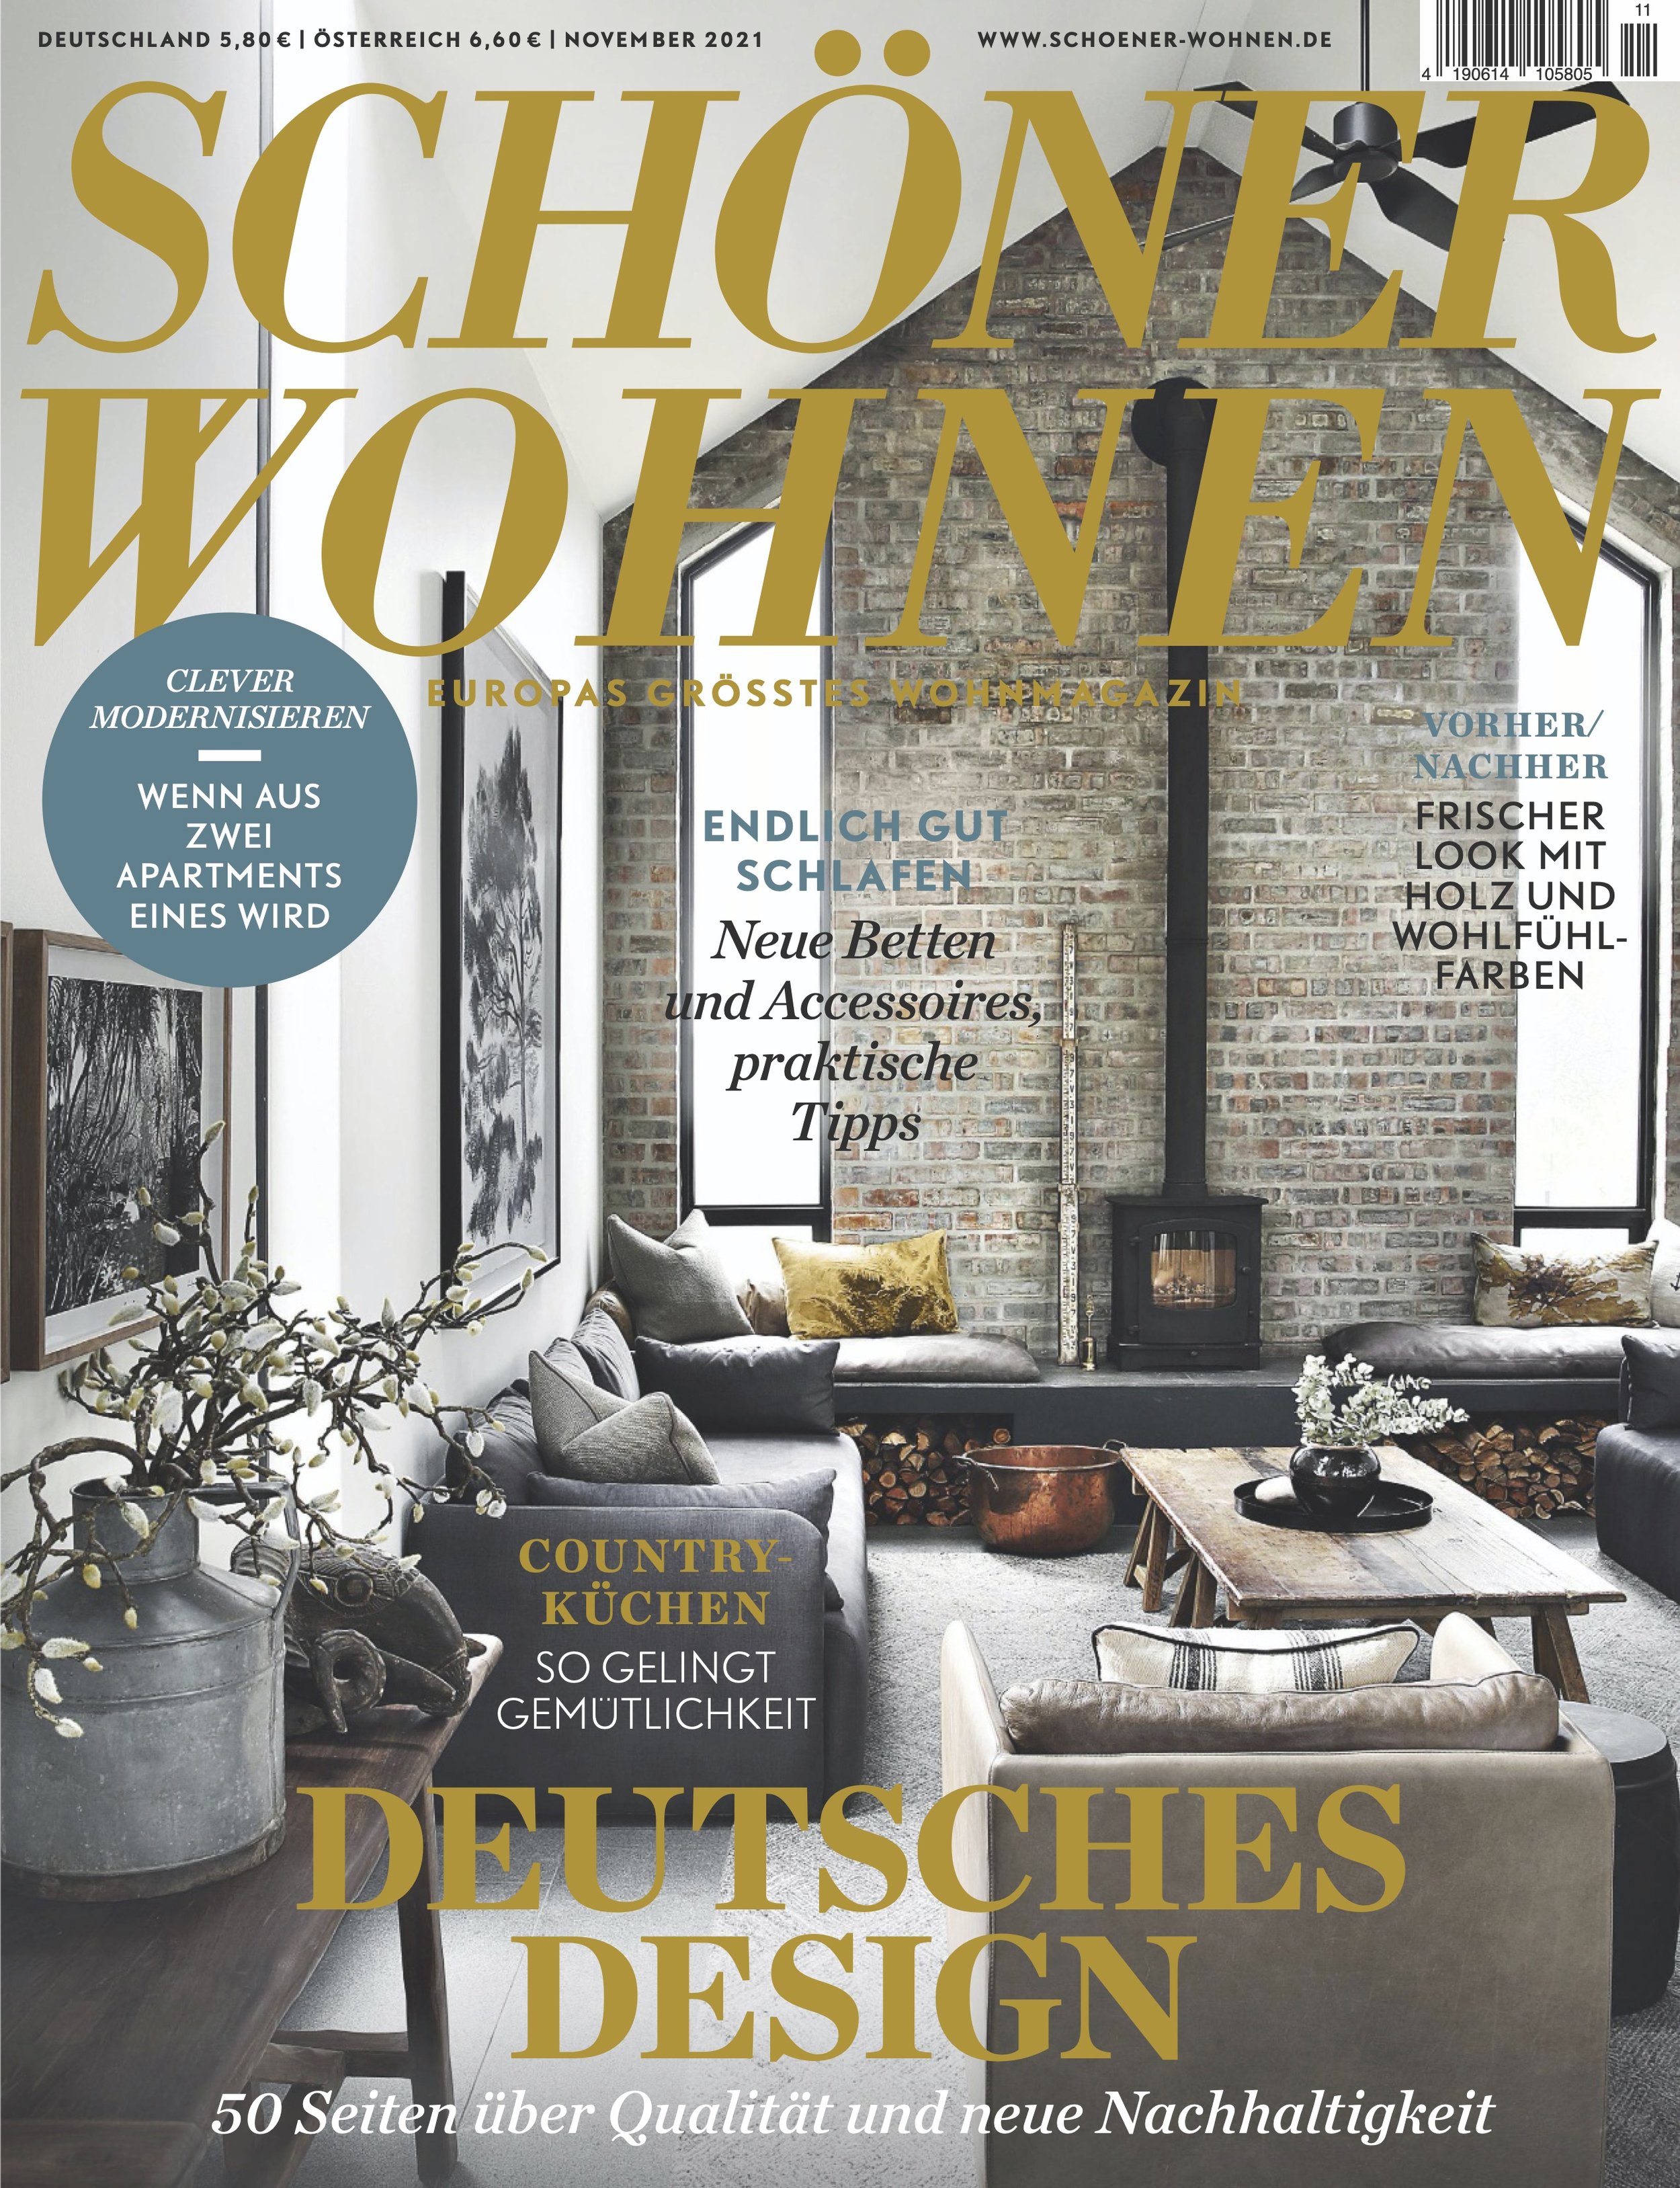 Schoener_Wohnen_11-2021_Seite_1_28-38 copy.jpg